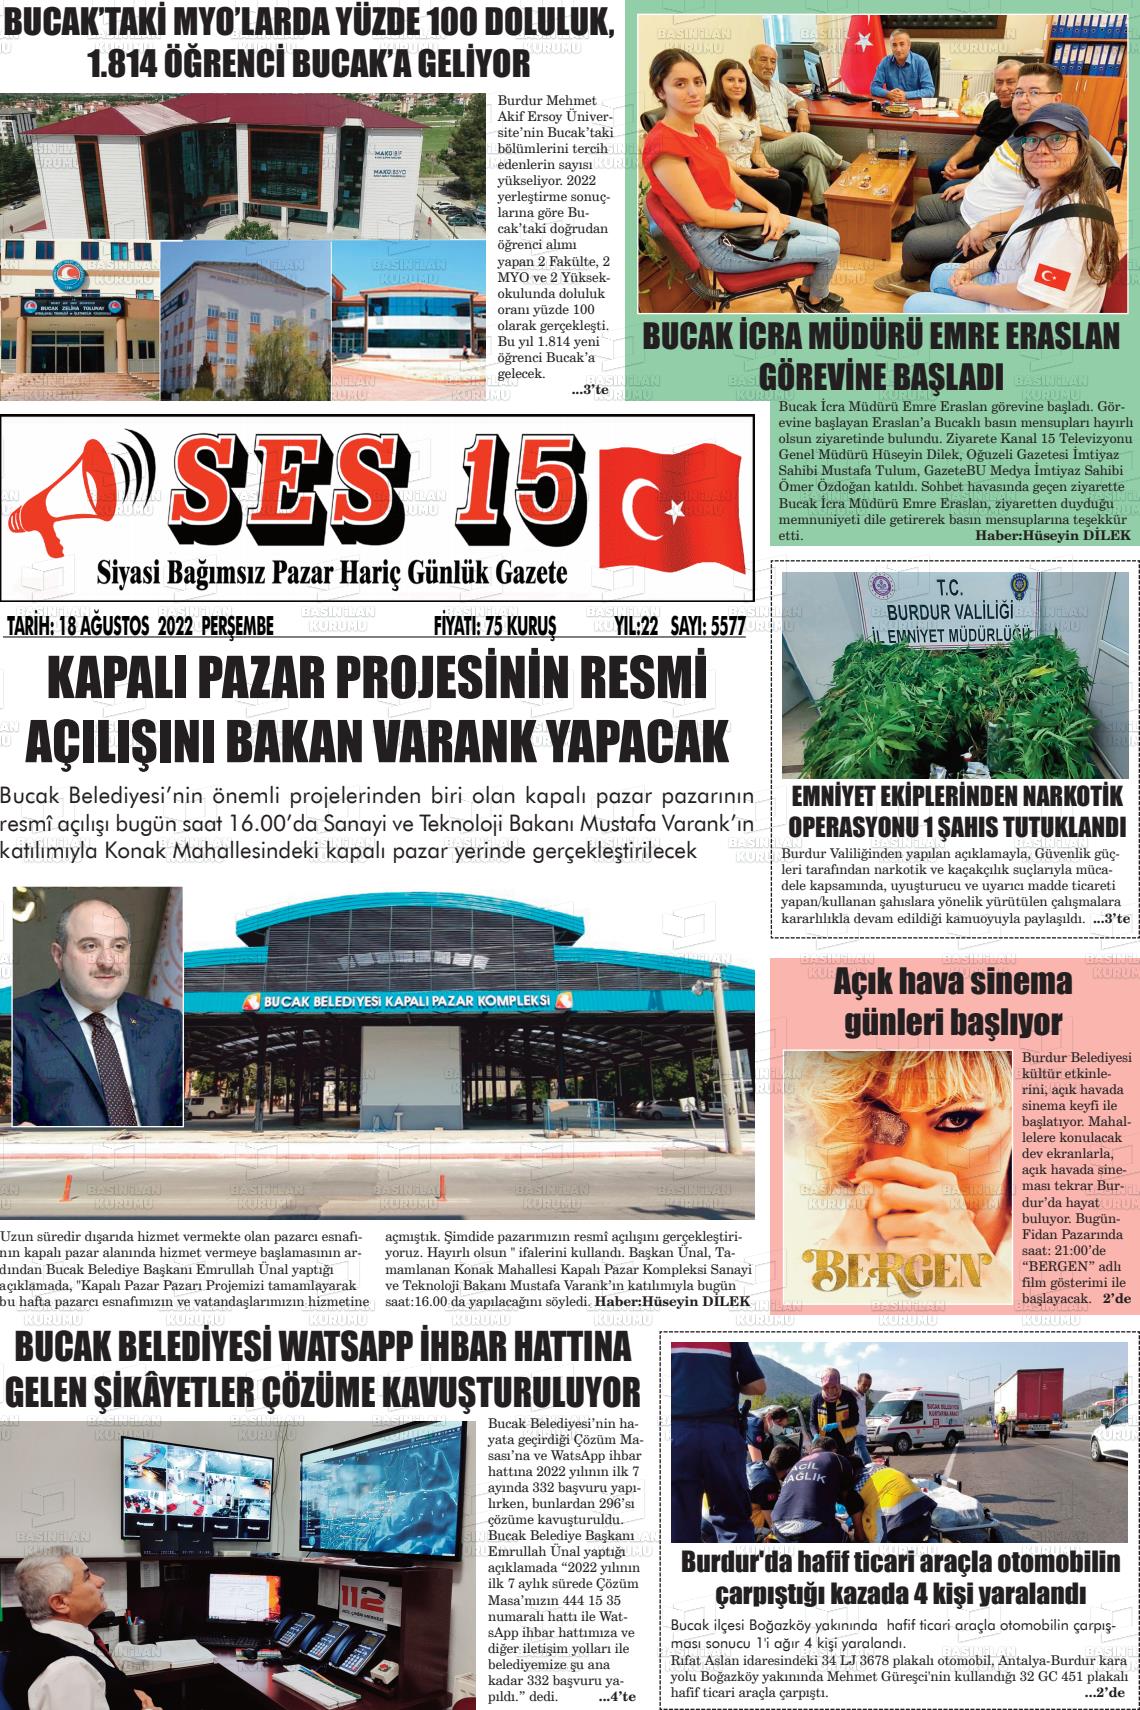 18 Ağustos 2022 Ses 15 Gazete Manşeti